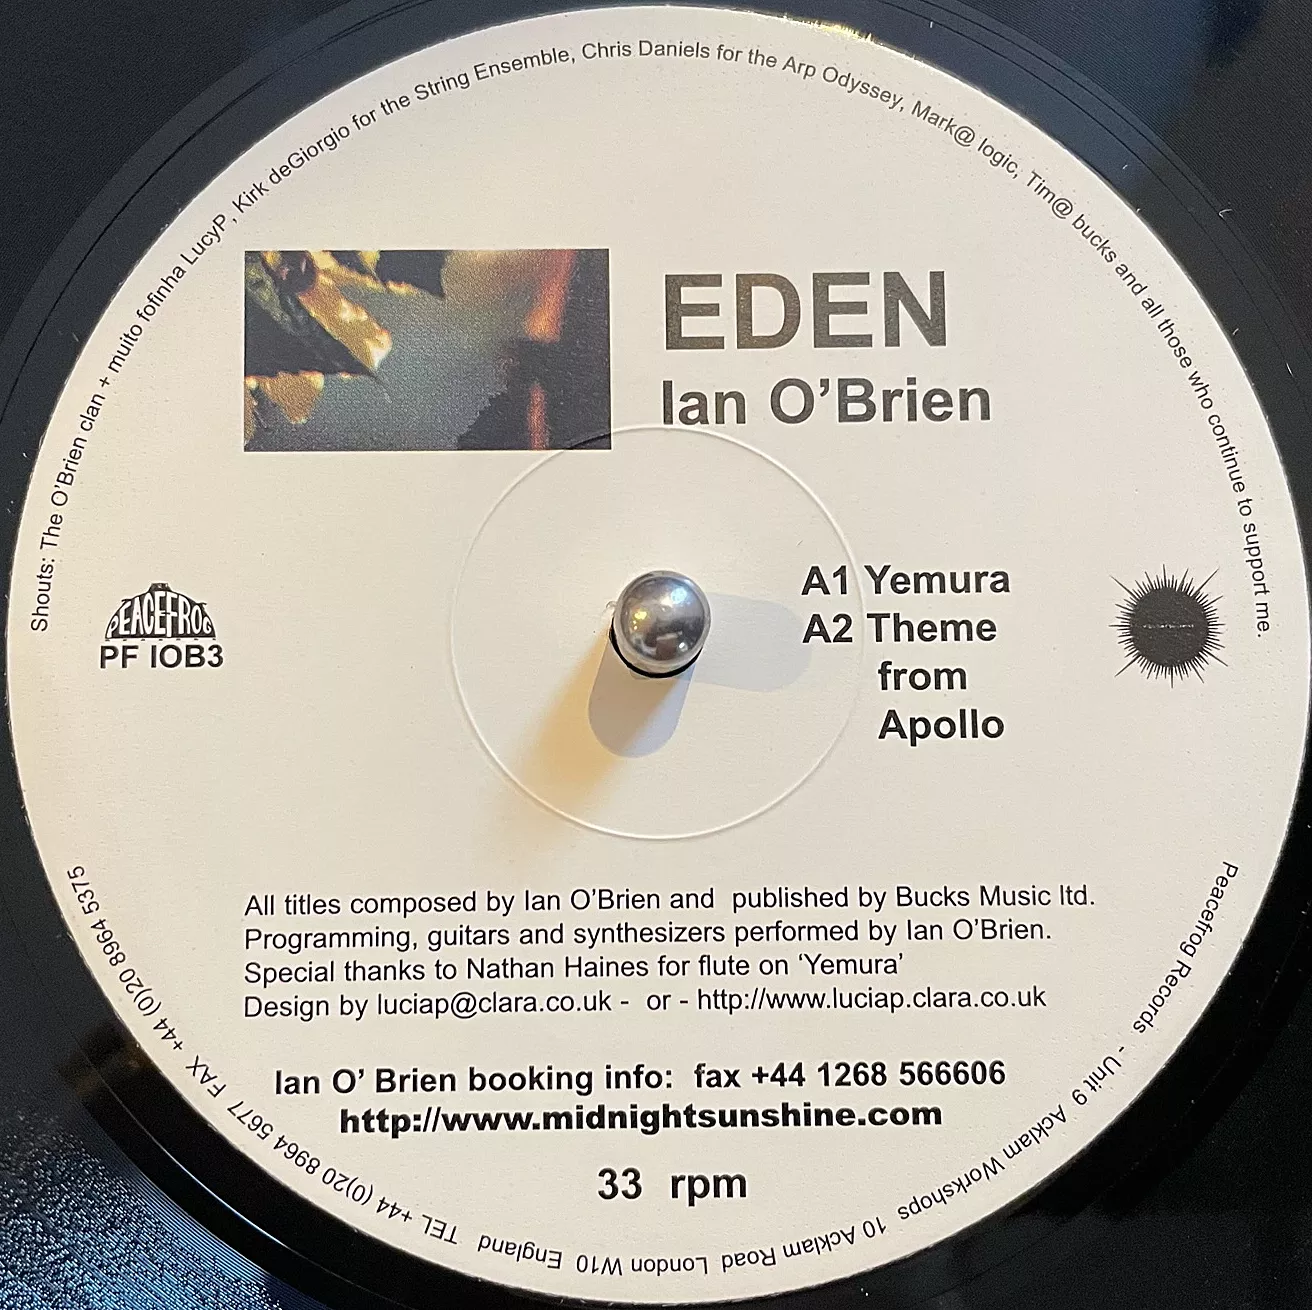 IAN O' BRIEN / EDEN